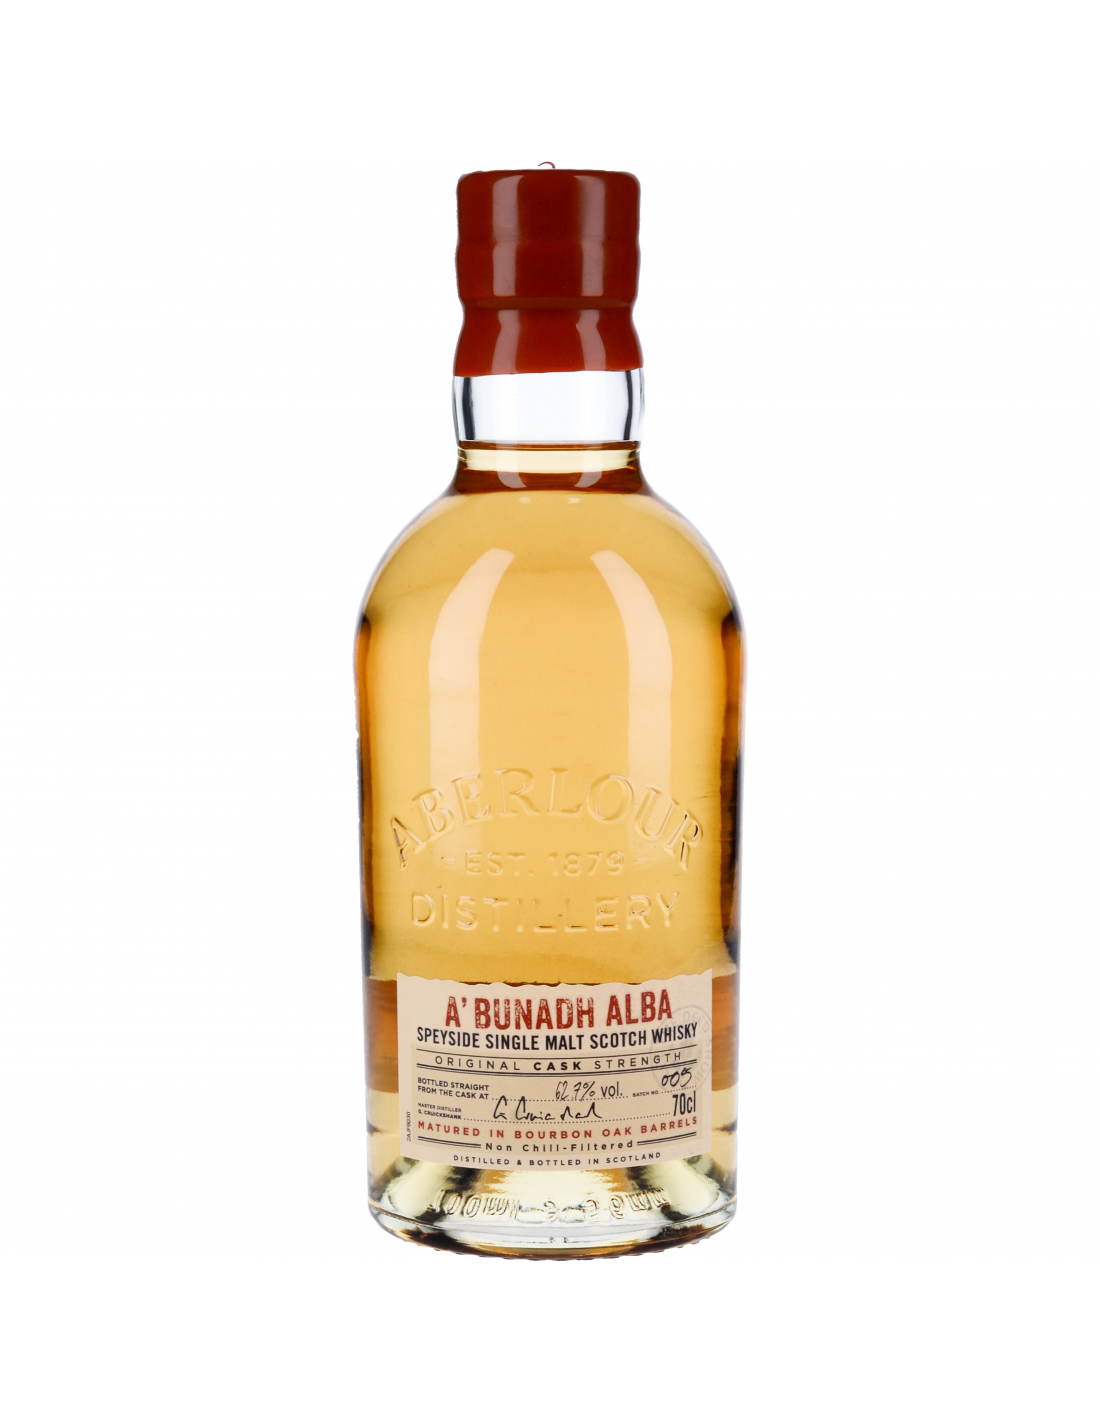 Aberlour Scotch whisky Casg Annamh 70 cl - Achat de Whisky Ecossais